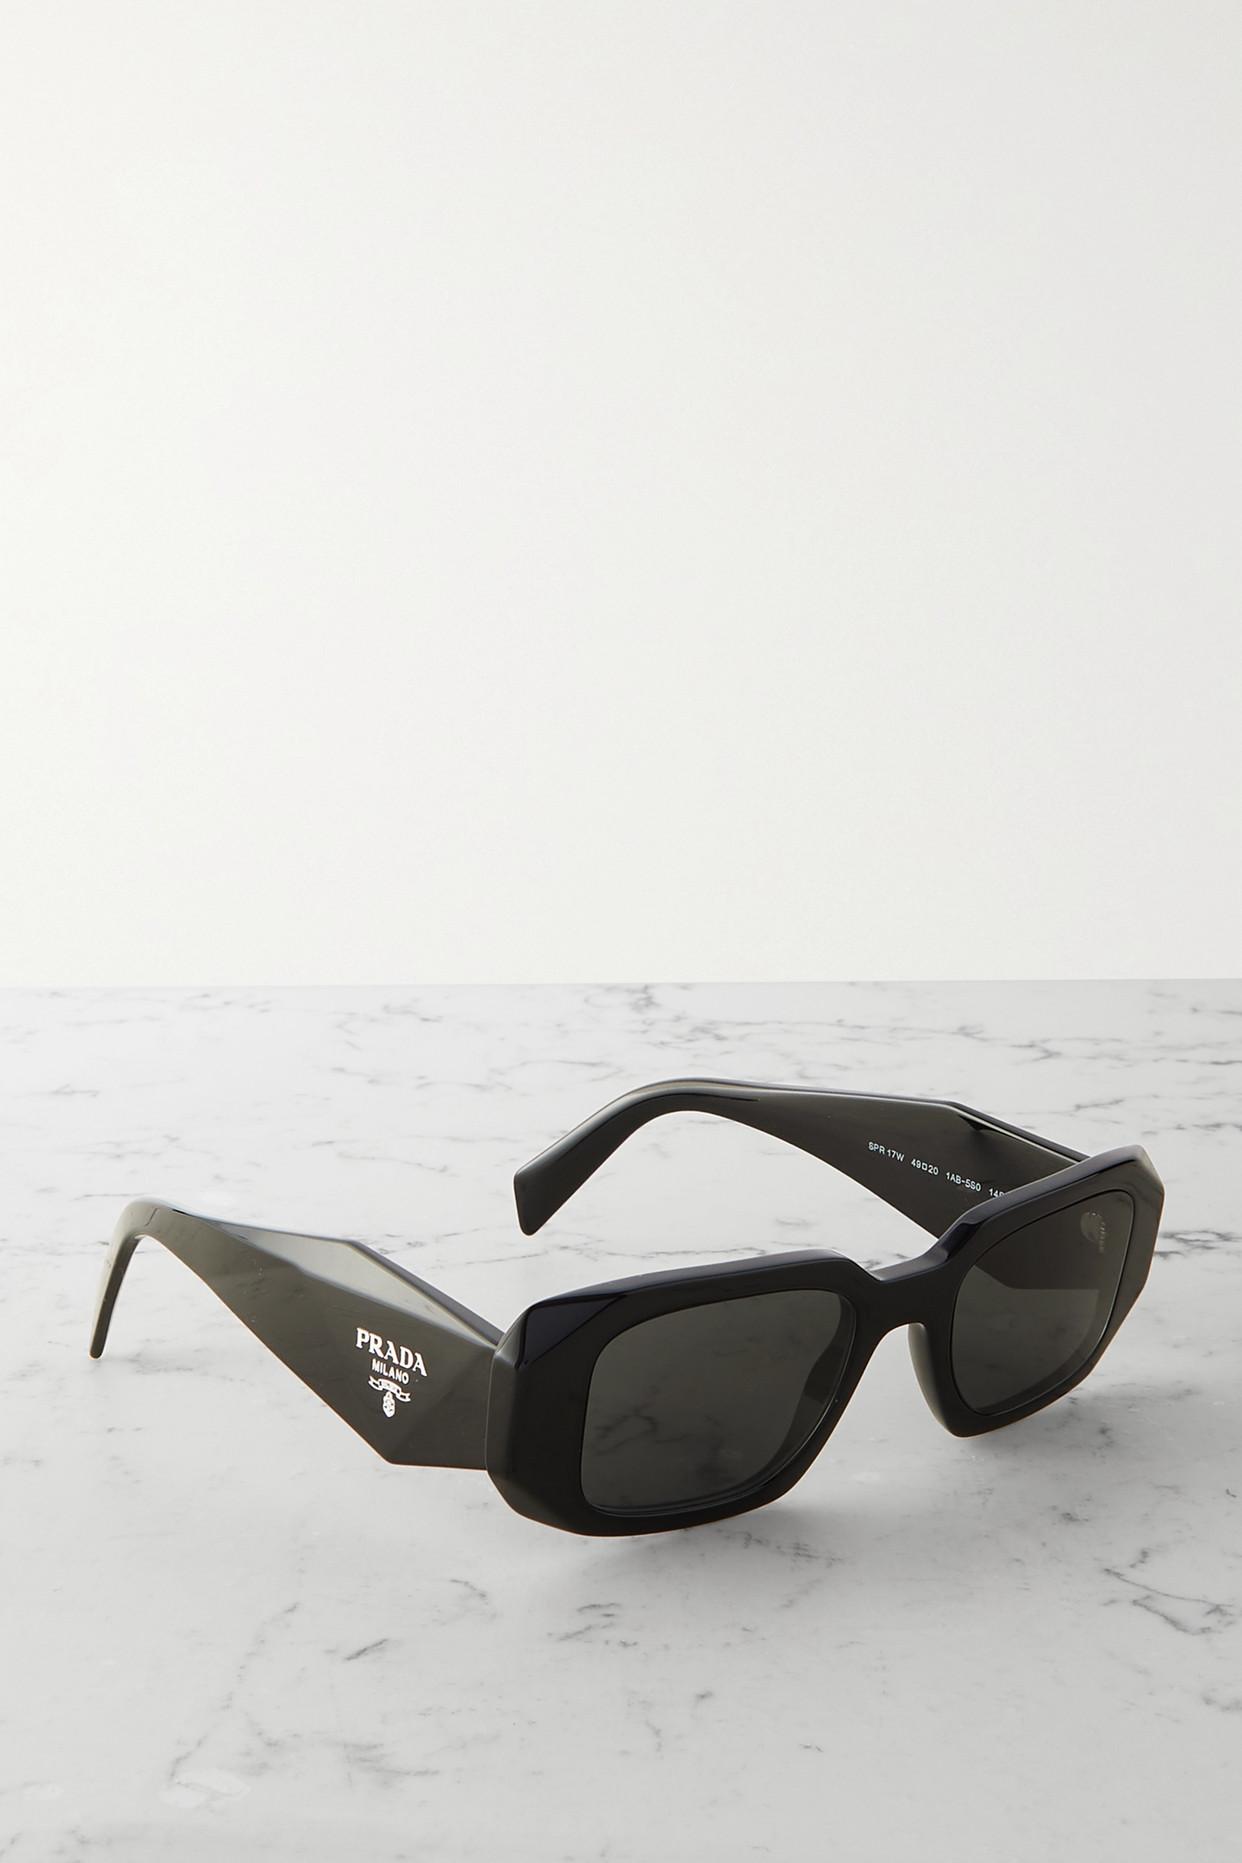 Prada PR 02ZS Gray/Clear Prescription Sunglasses